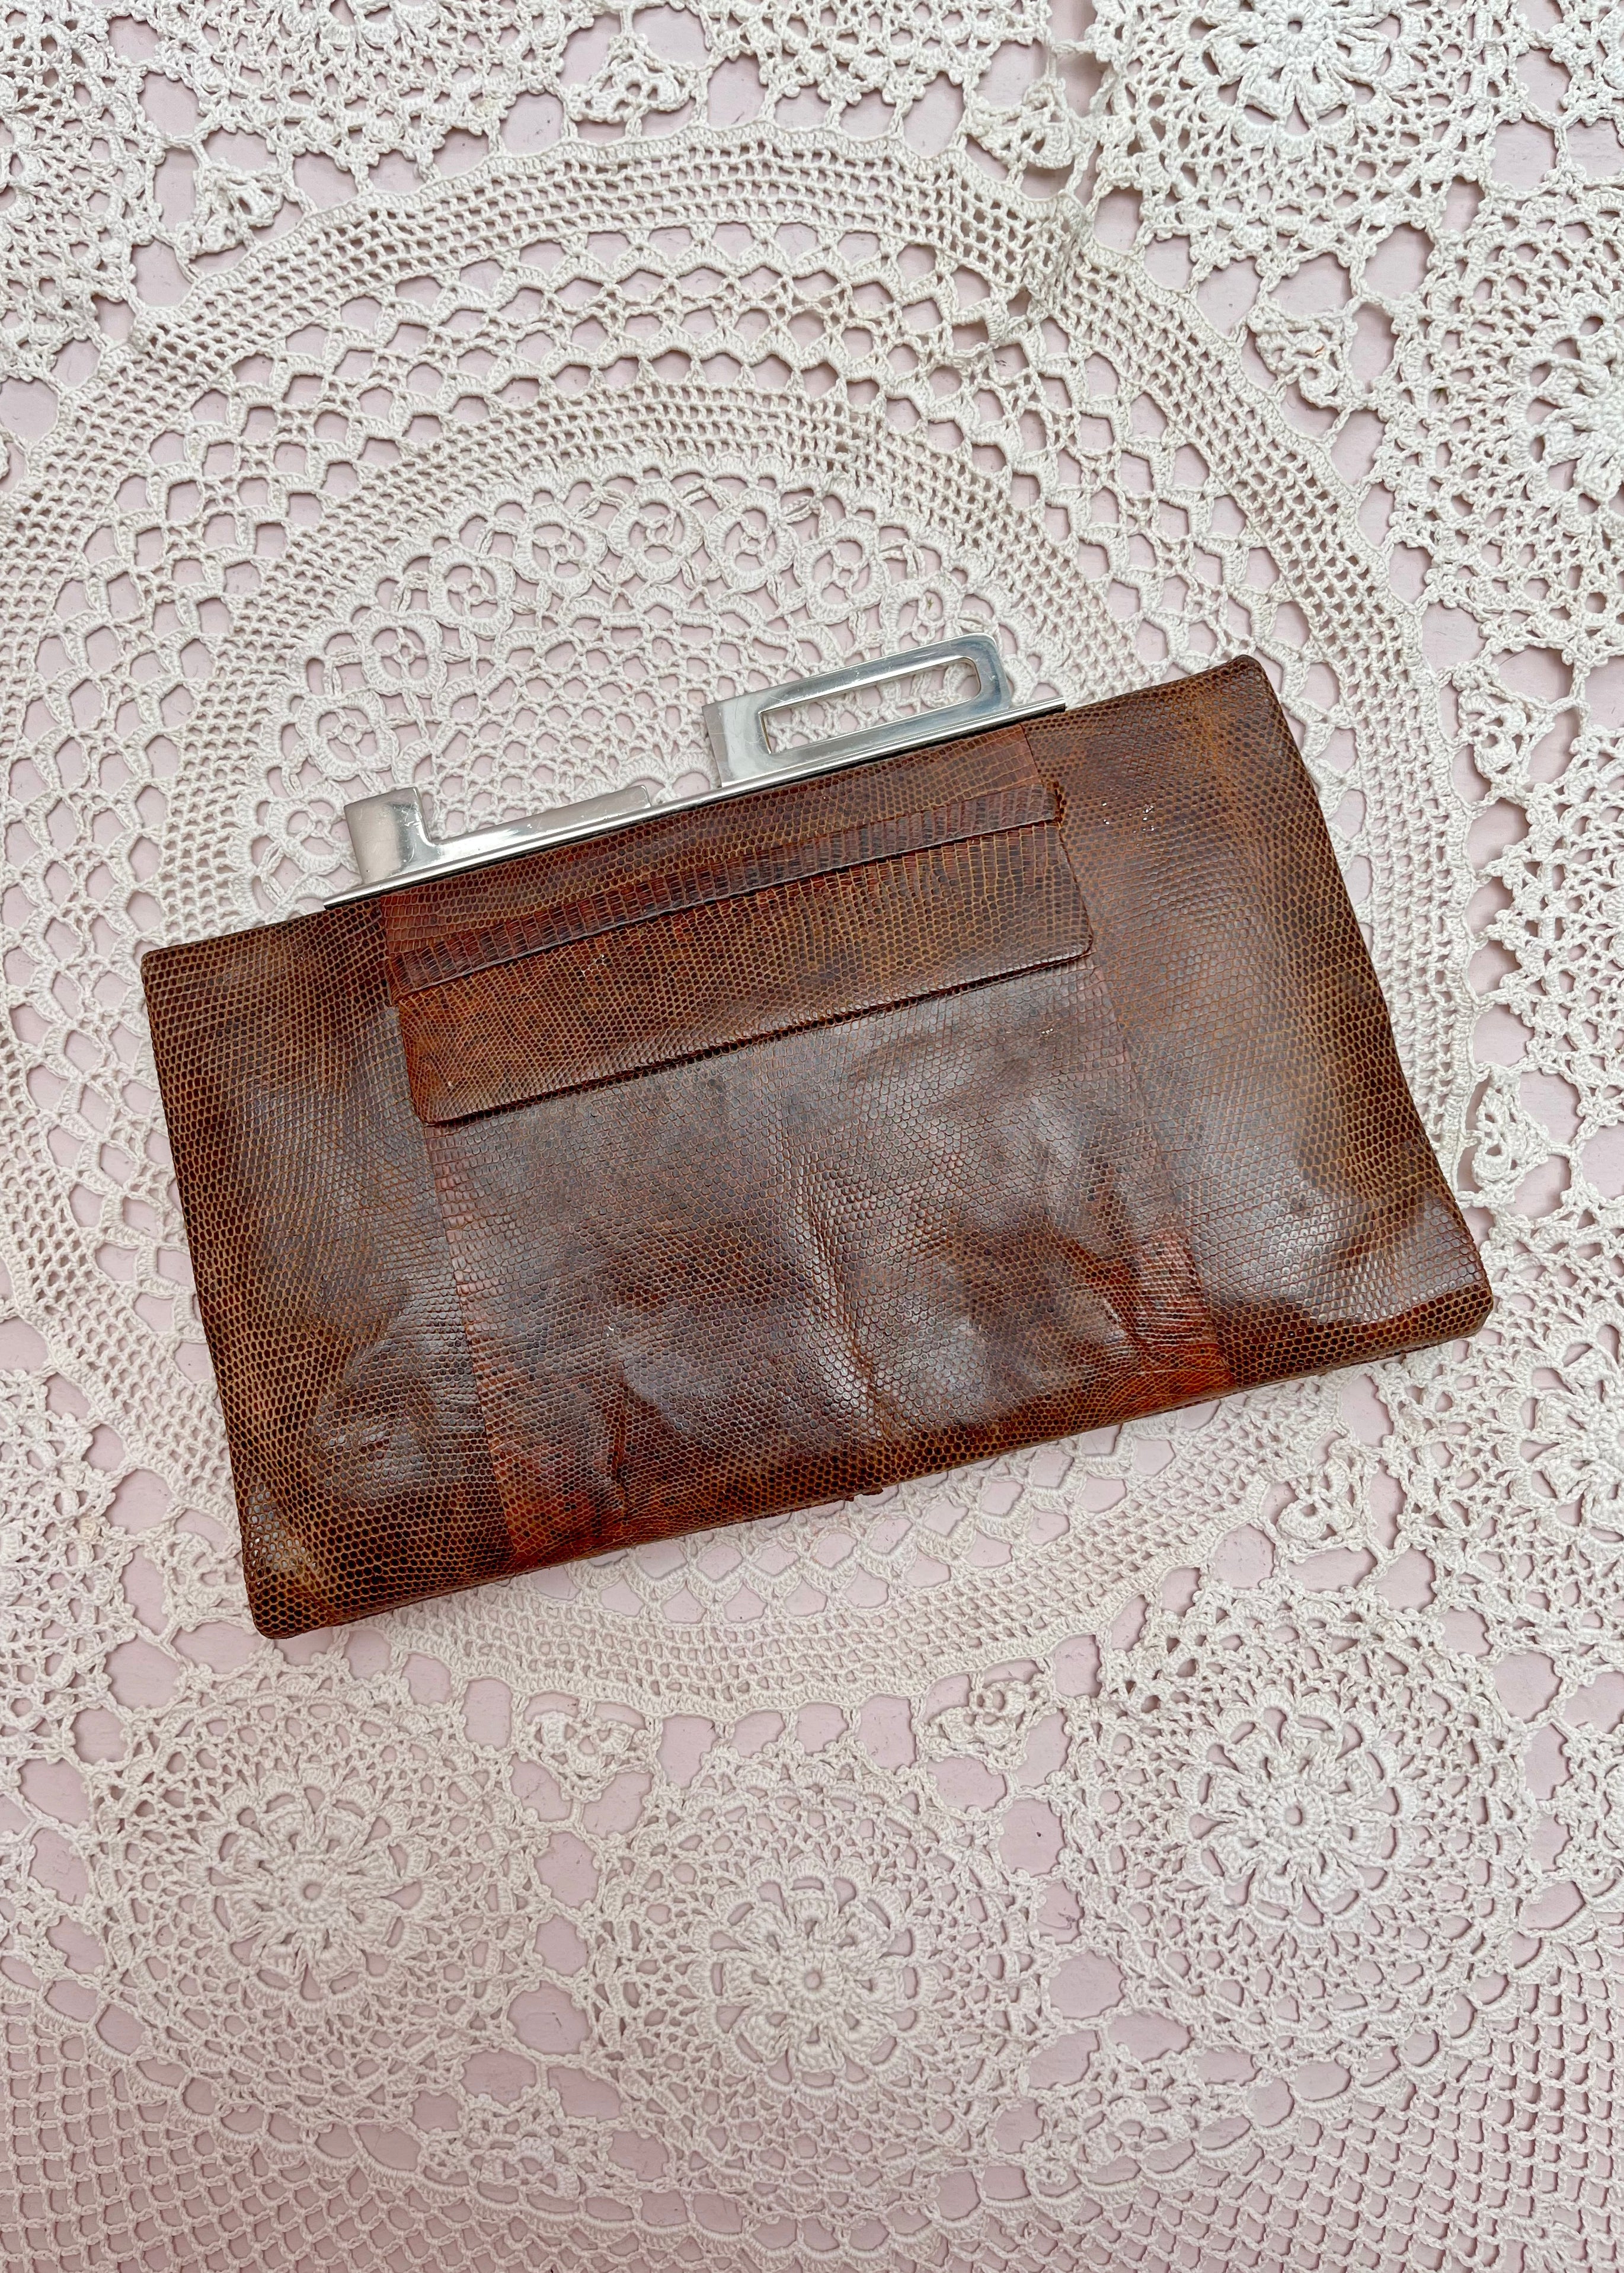 Unique Vintage Brown Leather Clutch